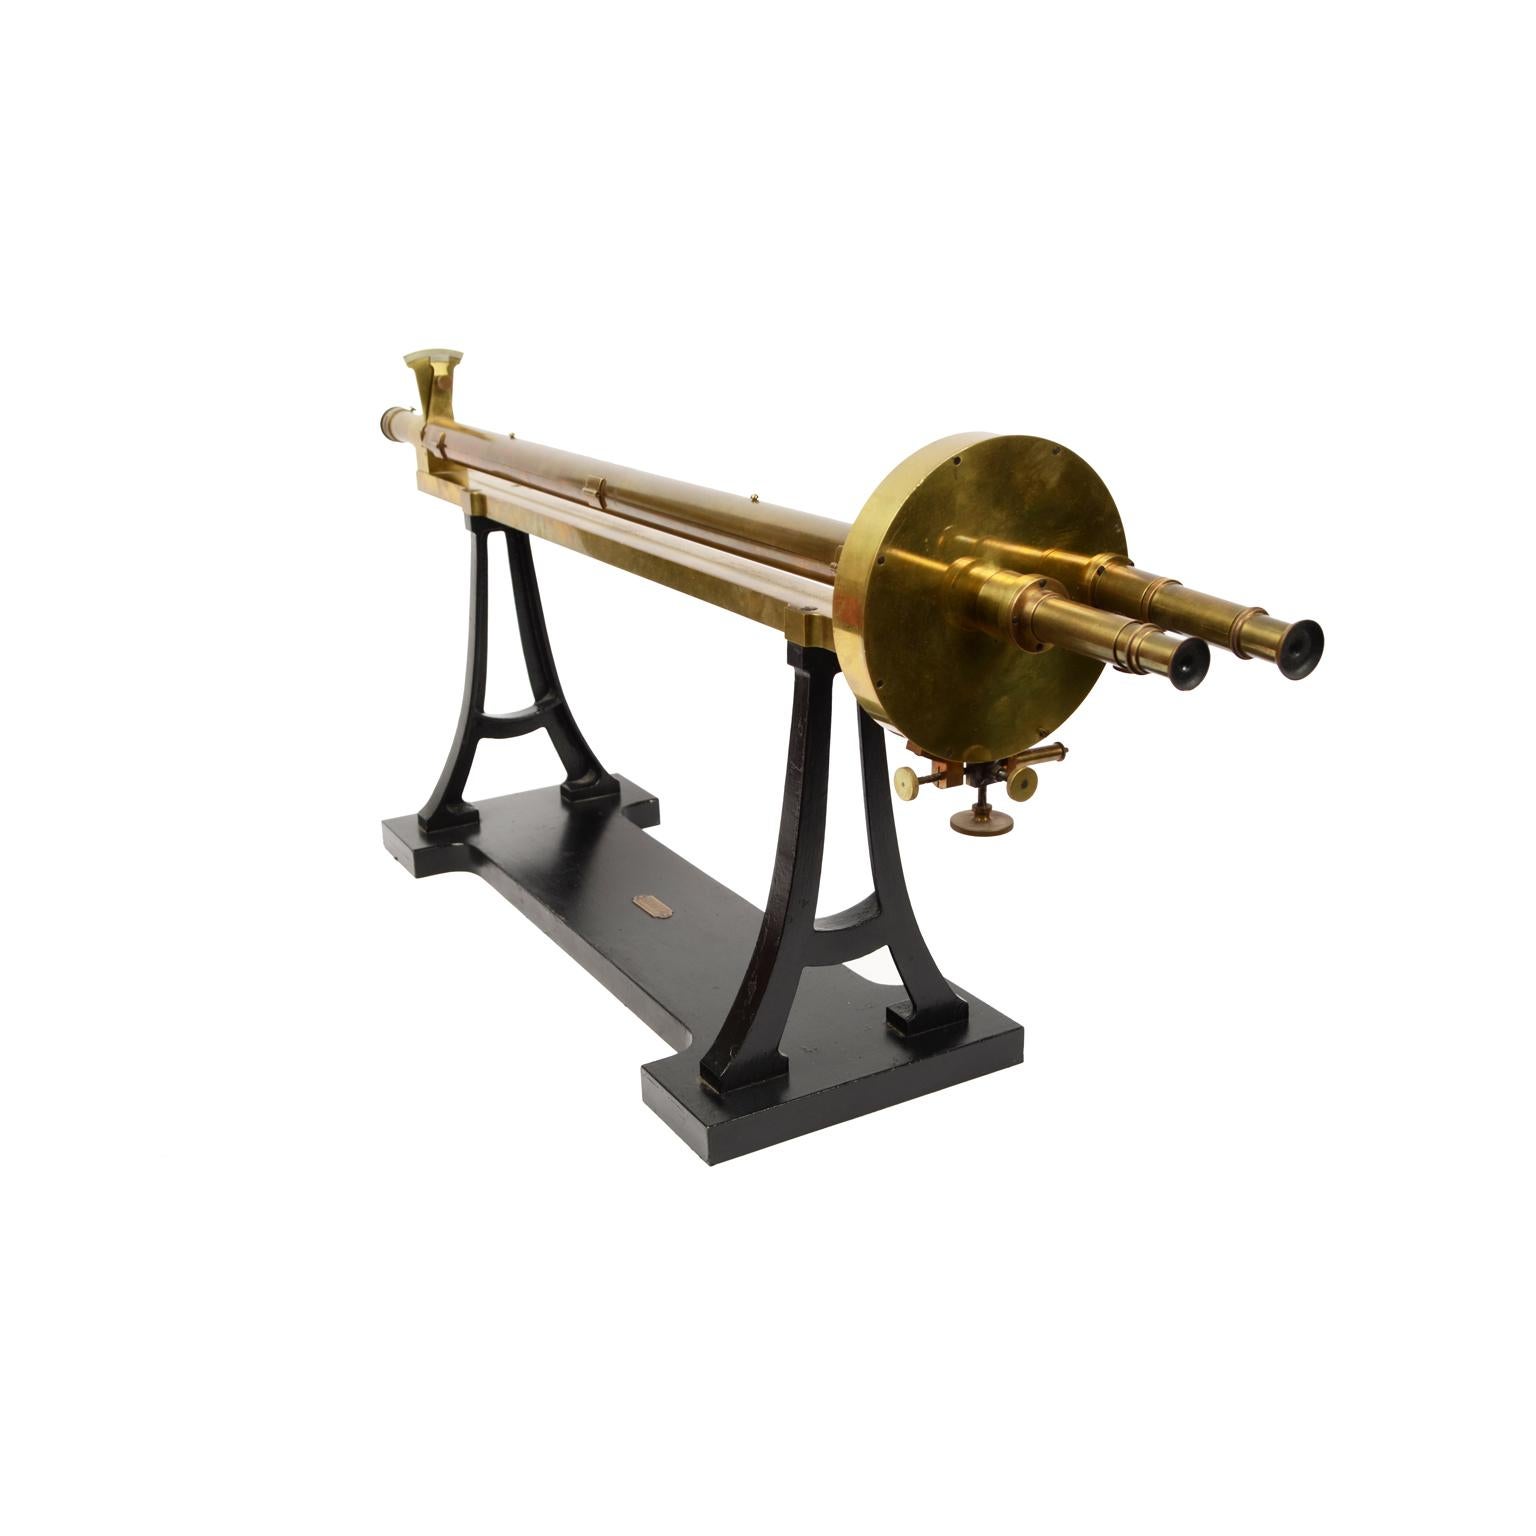 Lippich Polarimeter, wissenschaftliches Instrument aus dem Jahre 1893, signiert Societé Genevoise Genève, Messing und schwarzes Metall. Es handelt sich um ein optisches Analyseinstrument zur Bestimmung der Konzentration von Saccharose und Glucose in